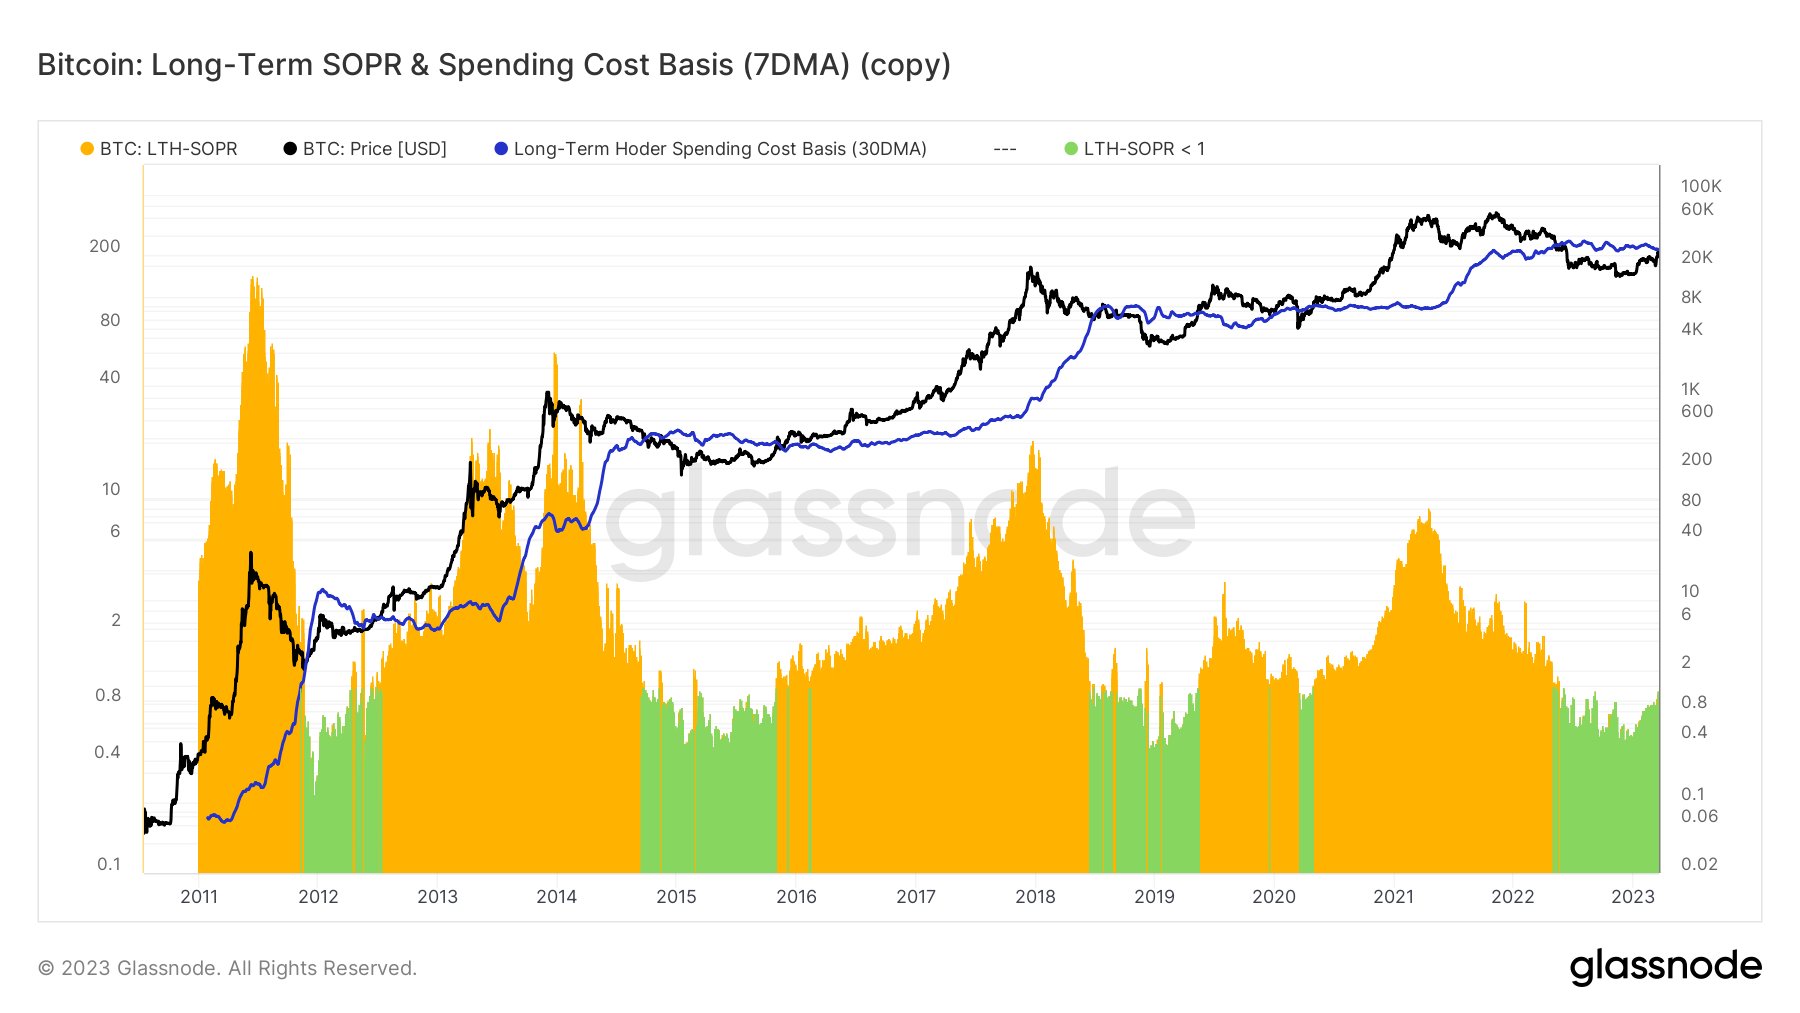 long-term holder spending cost basis